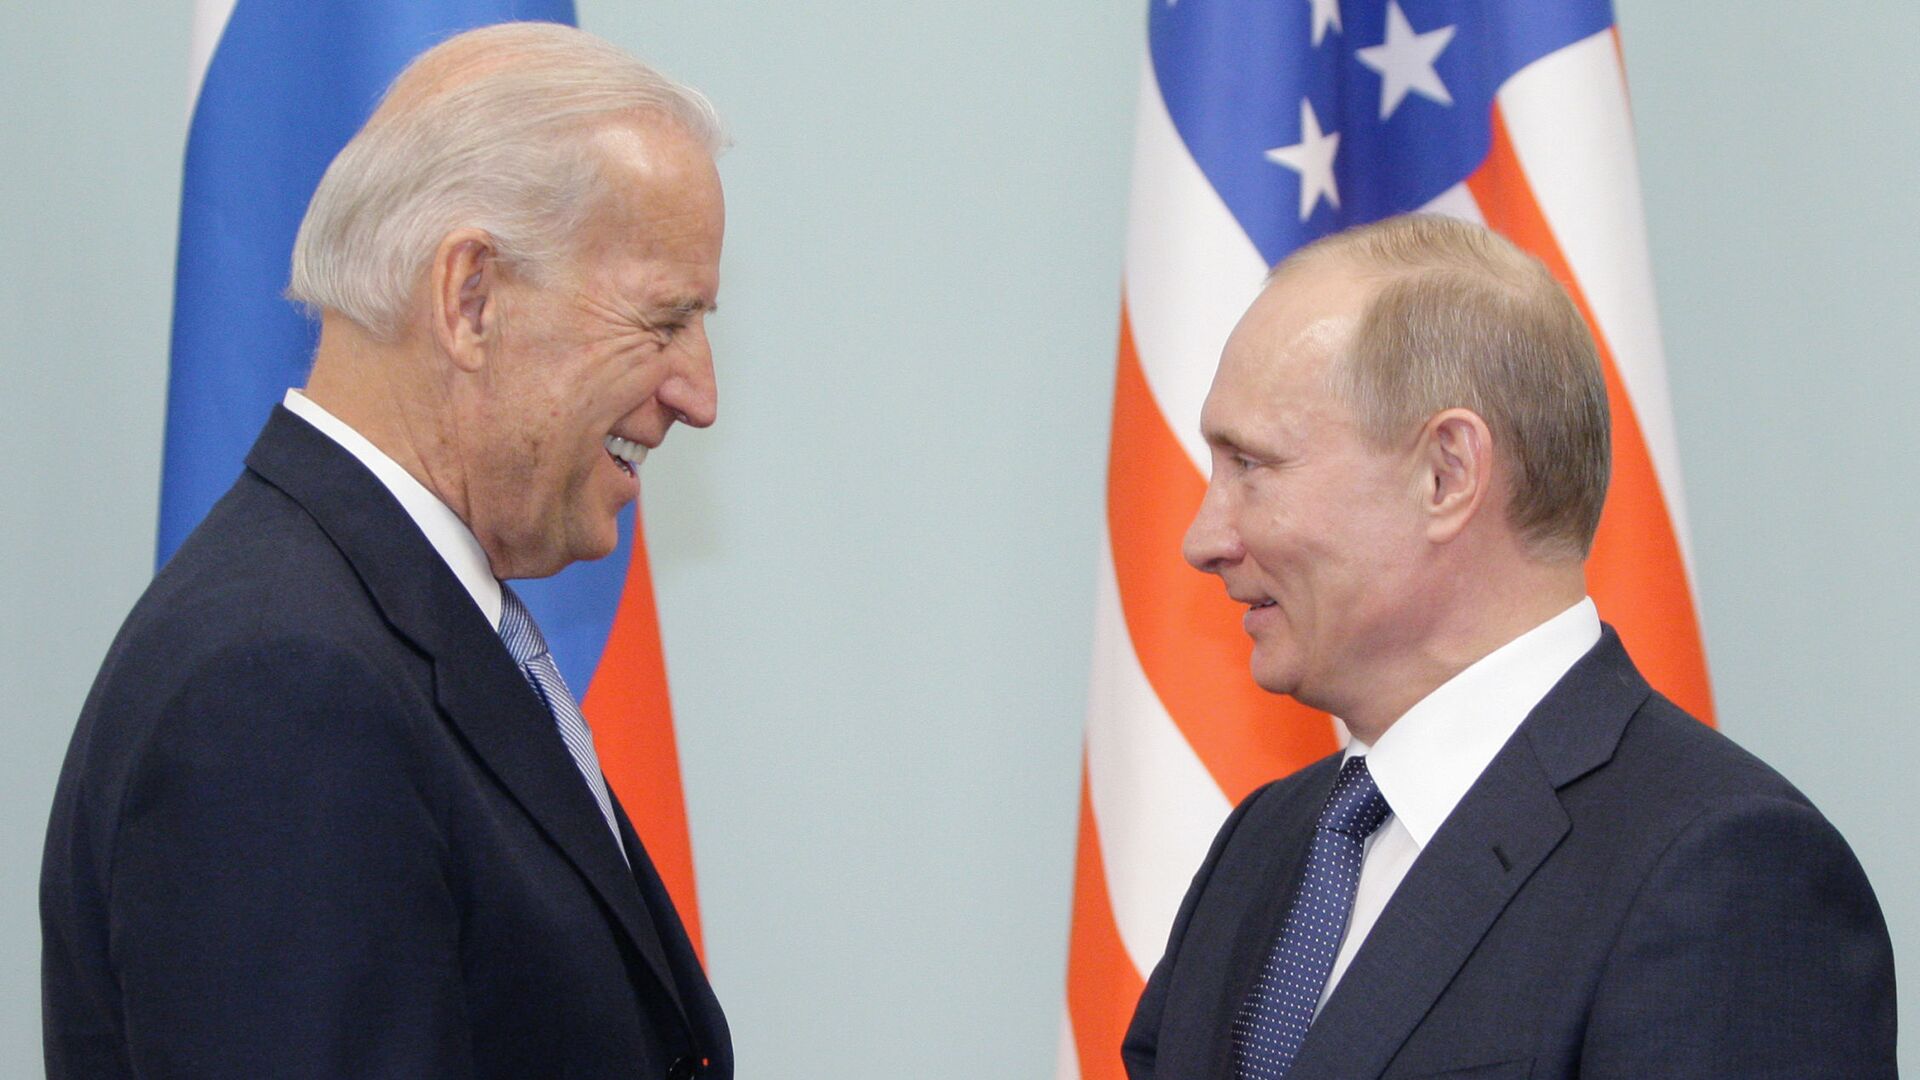 Встреча Владимира Путина с Джозефом Байденом в Москве, 2011 - Sputnik Латвия, 1920, 07.05.2021